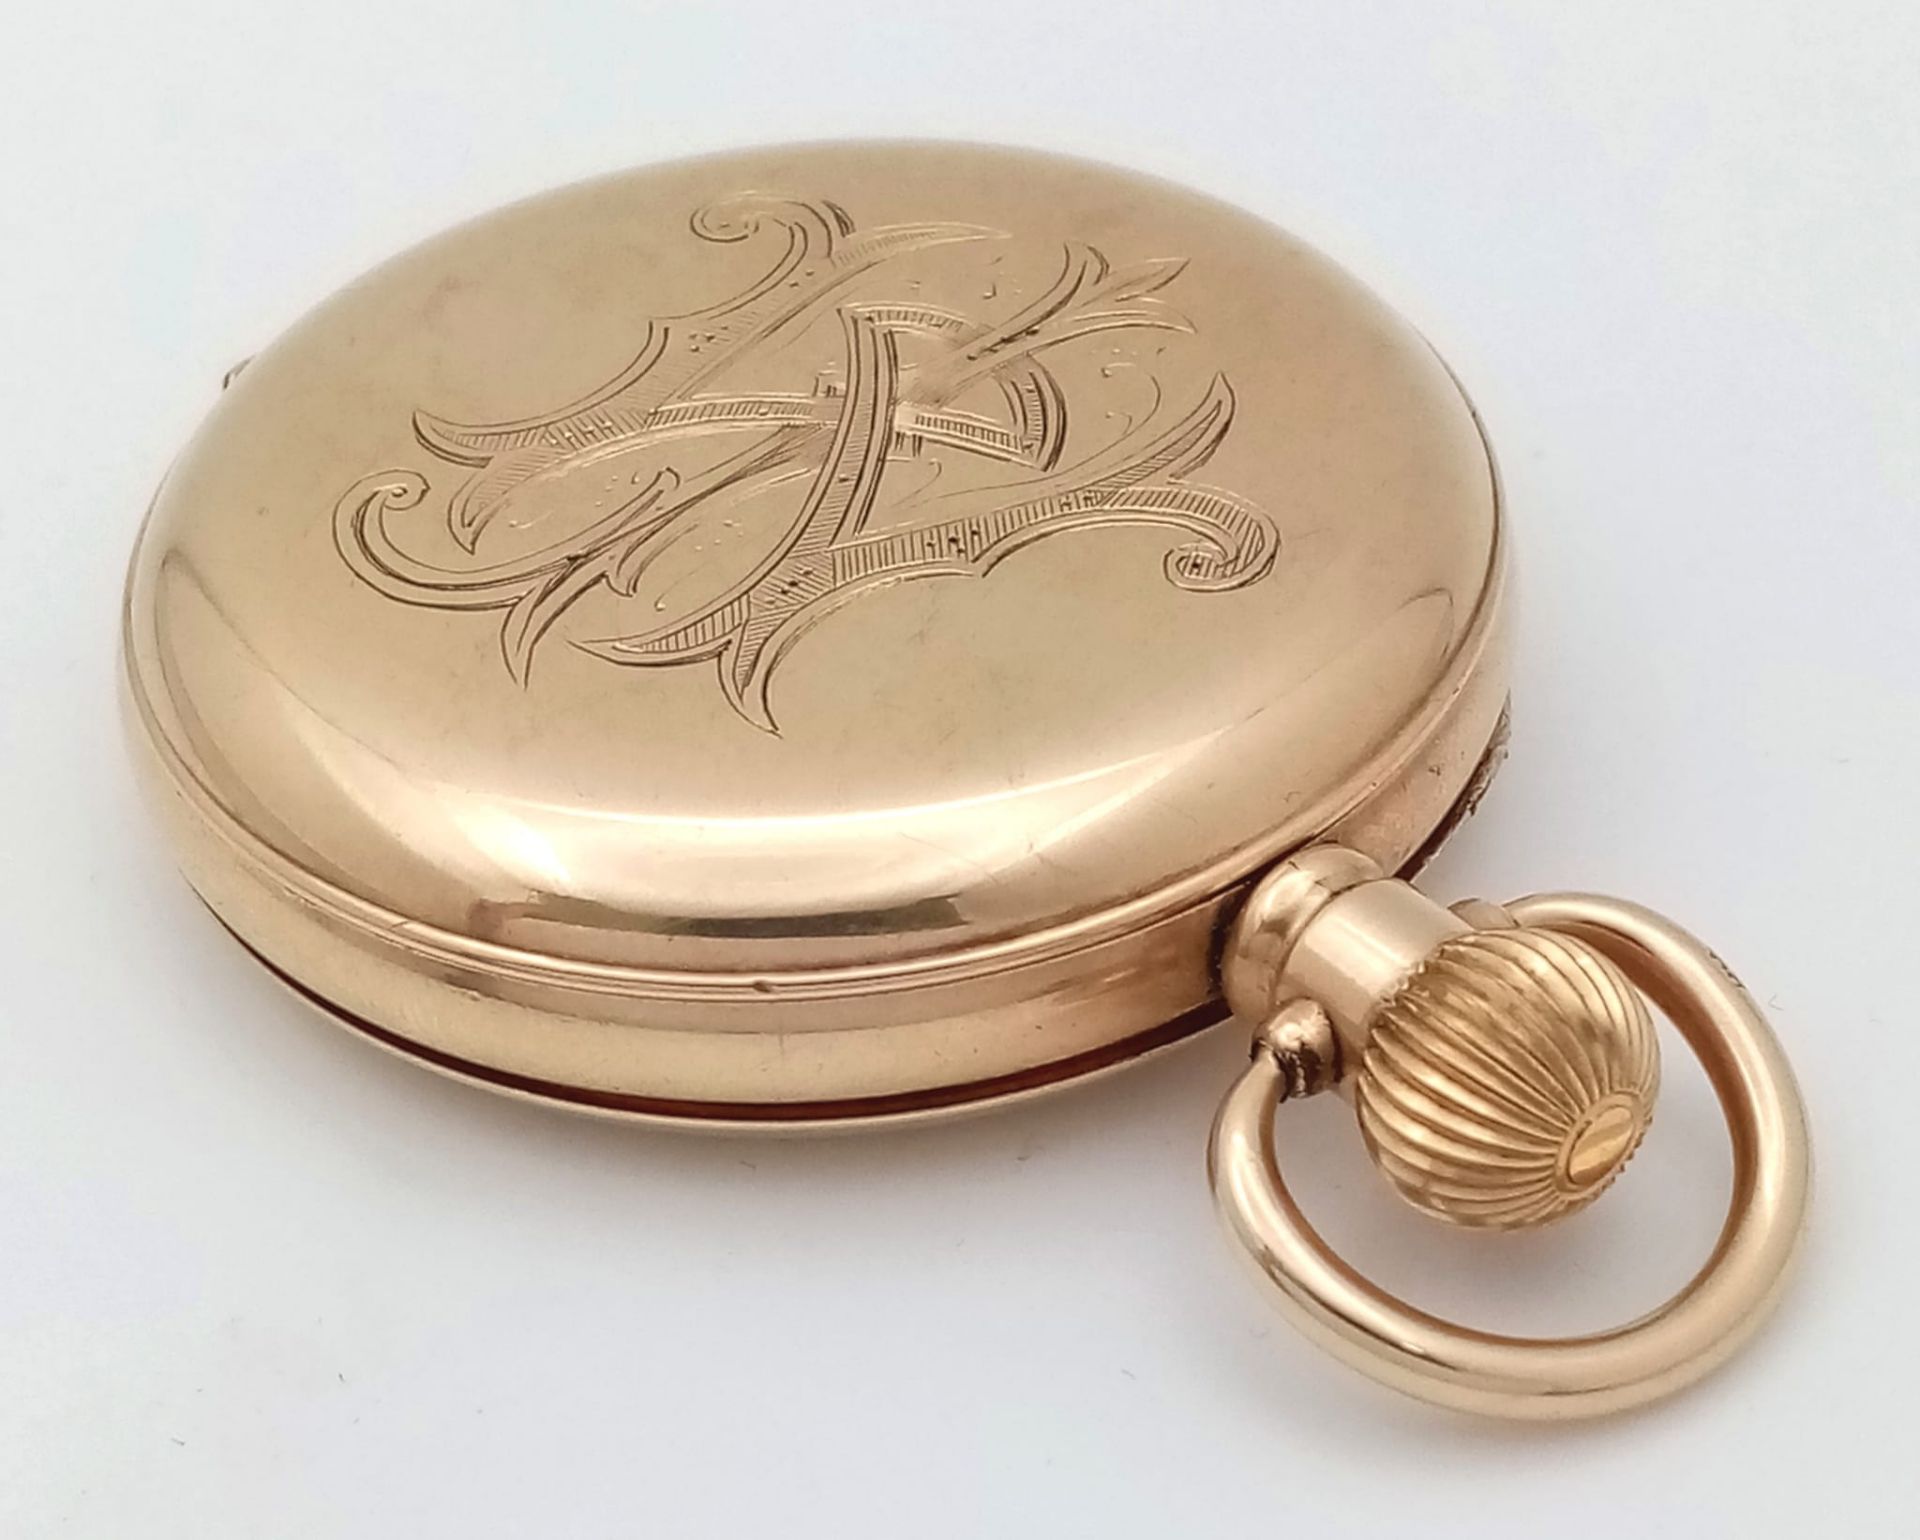 An Antique 10K Gold-Plated Cased Waltham Traveler Full Hunter Pocket Watch. Dennison case. Top winde - Image 7 of 12